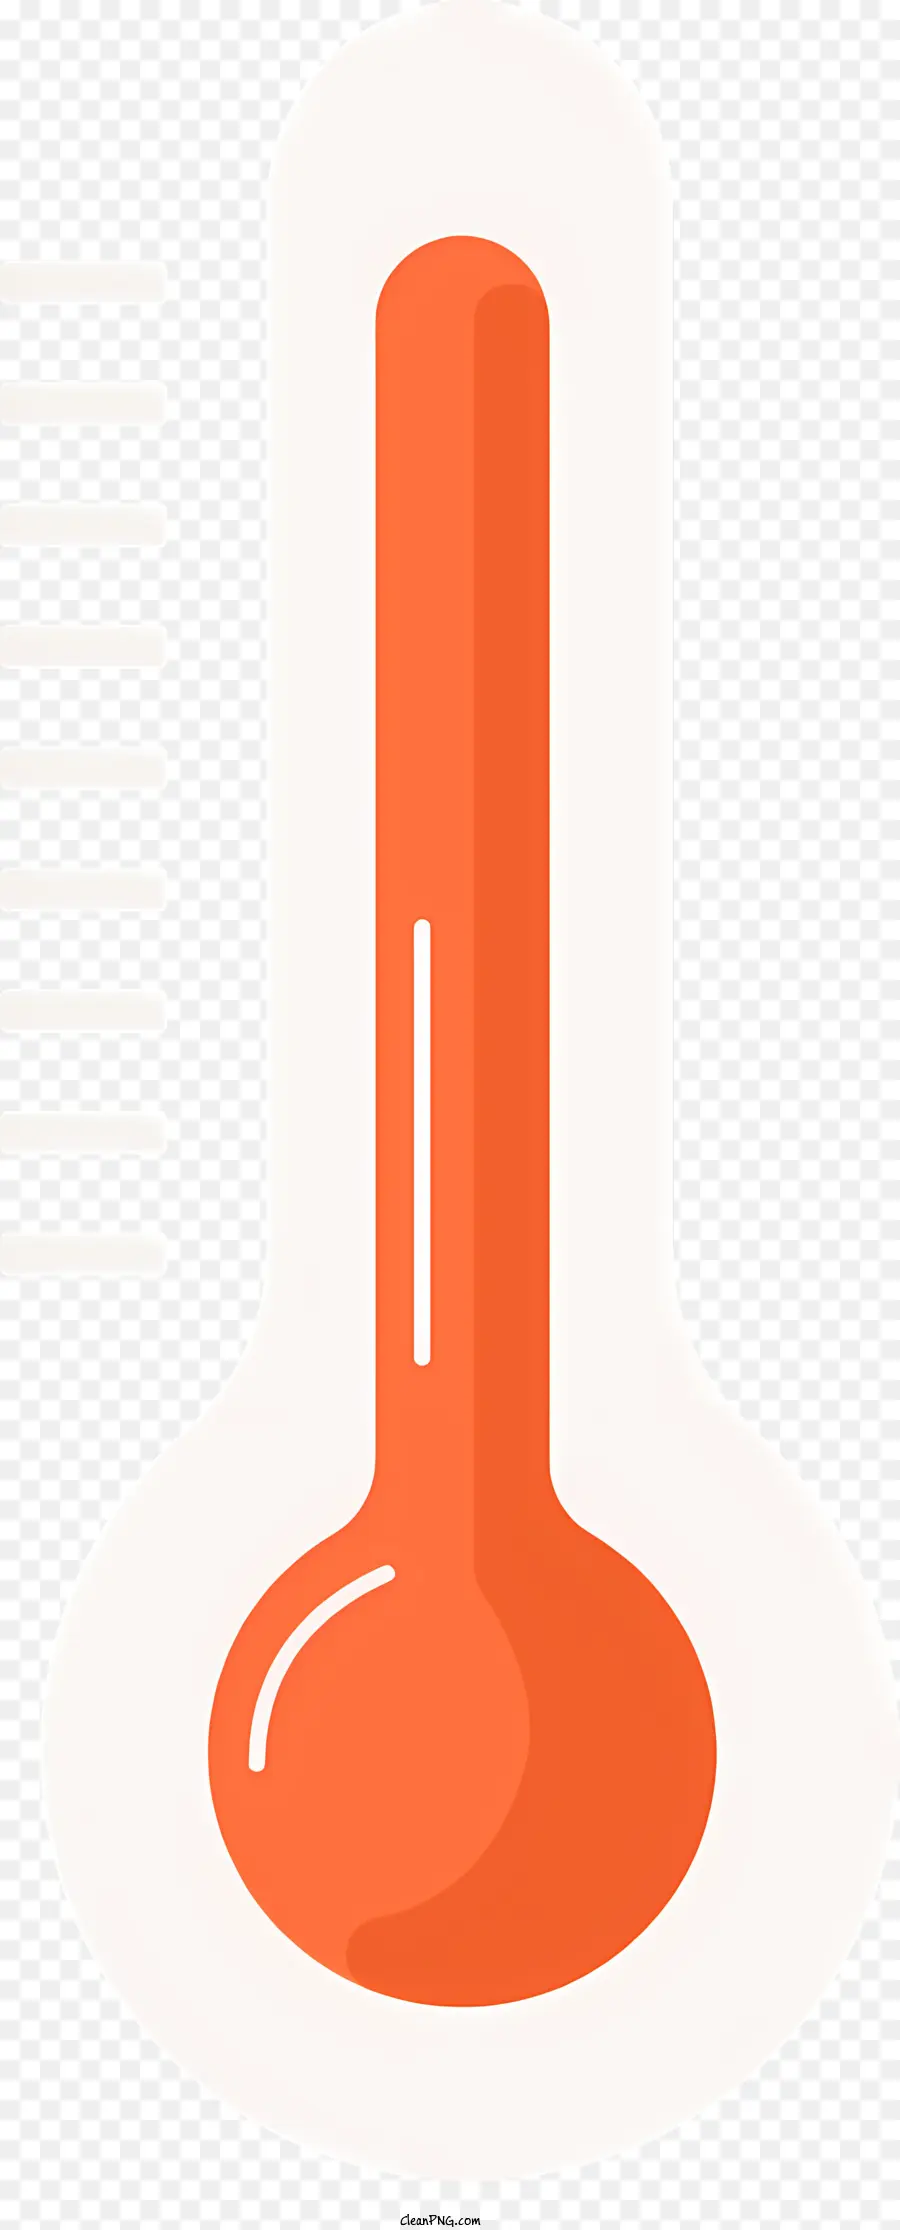 sfondo bianco - Termometri con liquido rosso riscaldato a 45 e 60 gradi